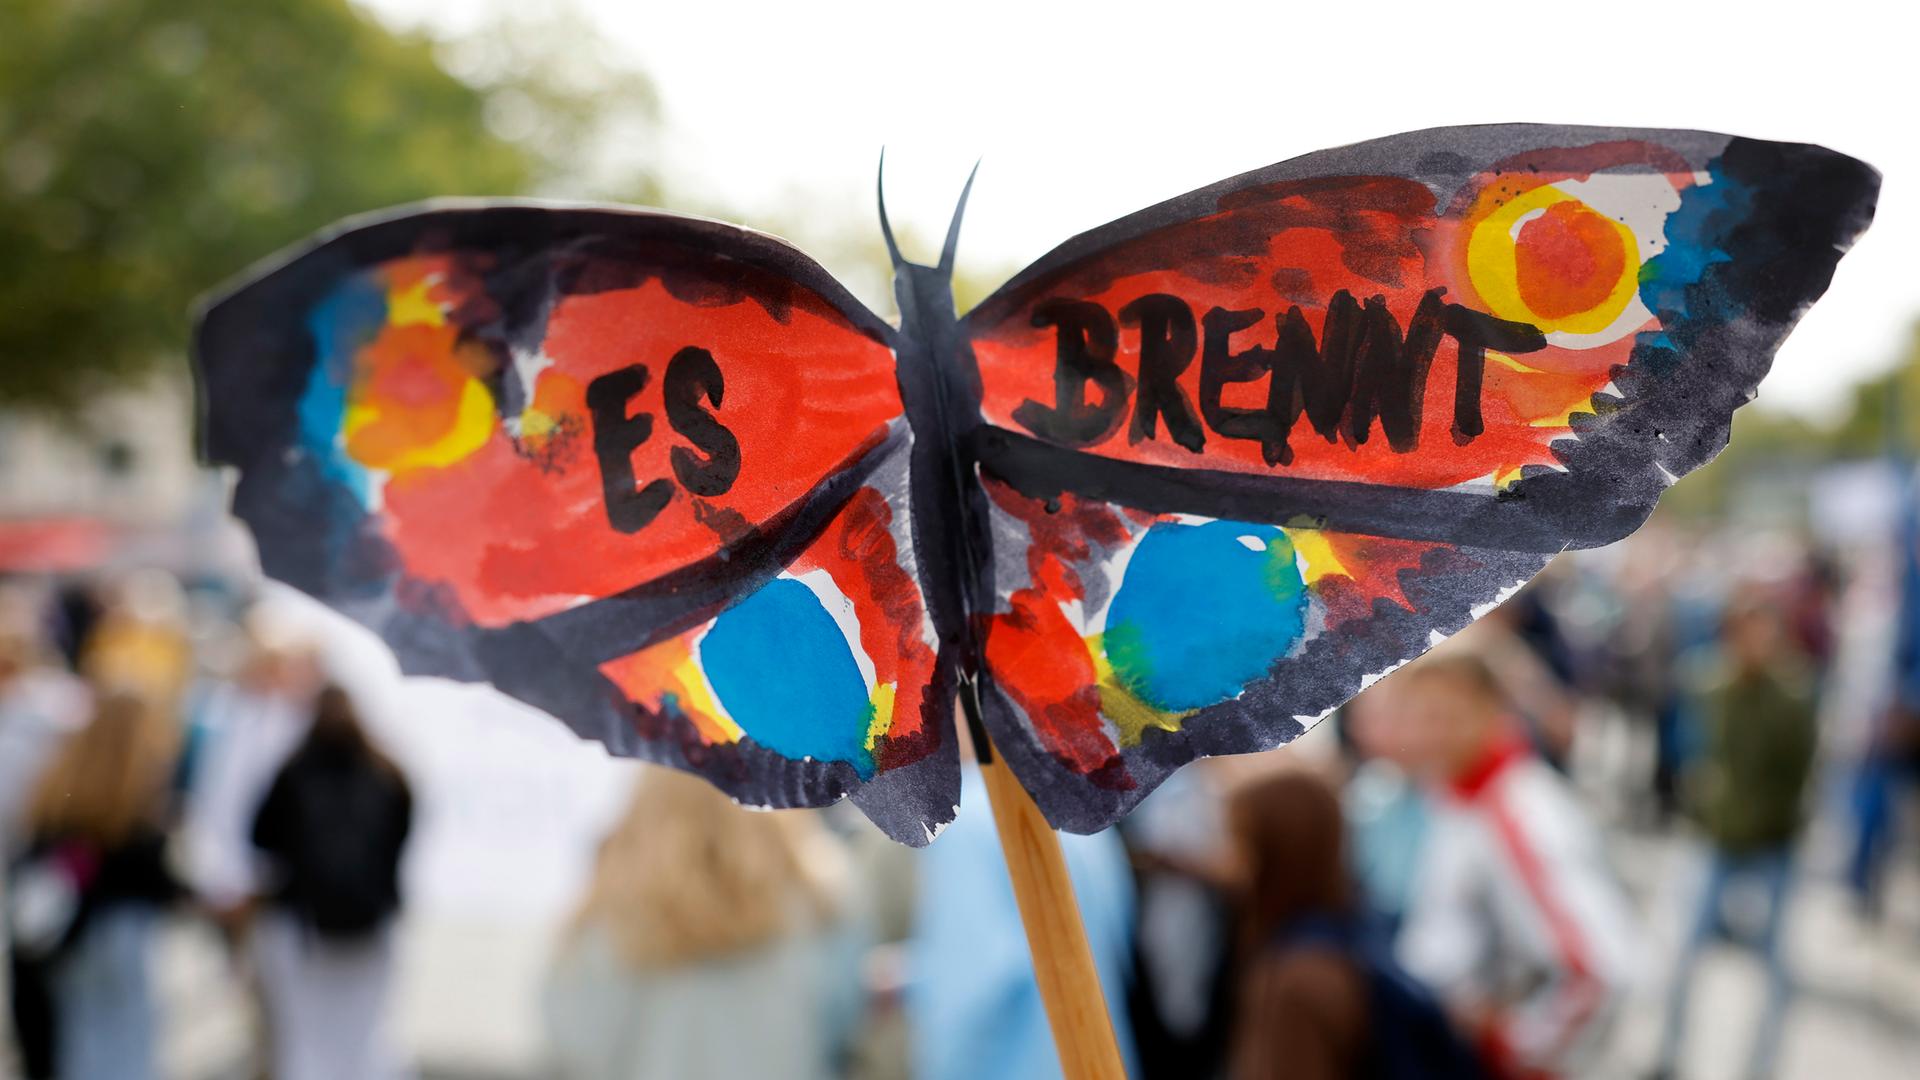 Teilnehmer einer Klimademonstration halten Schilder und Transparente in die Luft. Im Vordergrund ist ein selbst gebastelter Schmetterling mit der Aufschrift "Es brennt" zu sehen.